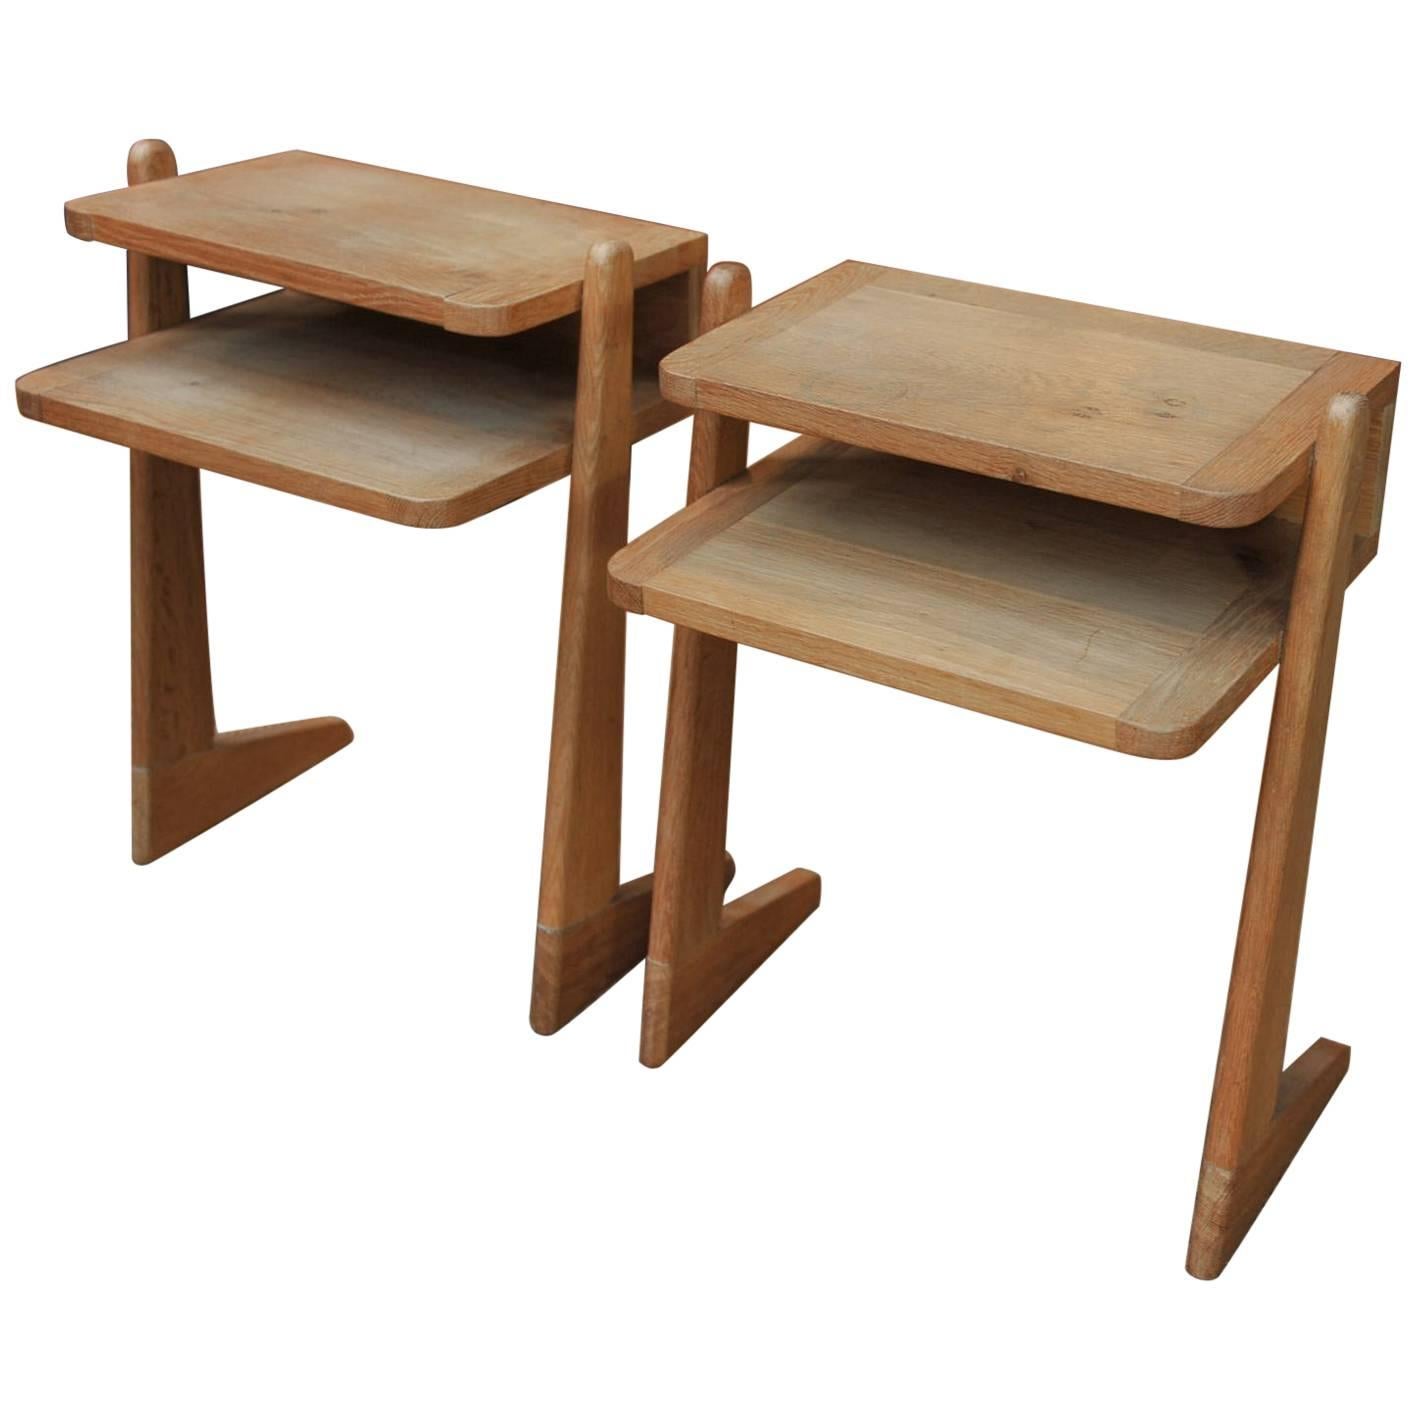 Guillerme & Chambron for Votre Maison, Pair of Oak Side Tables, 1950s